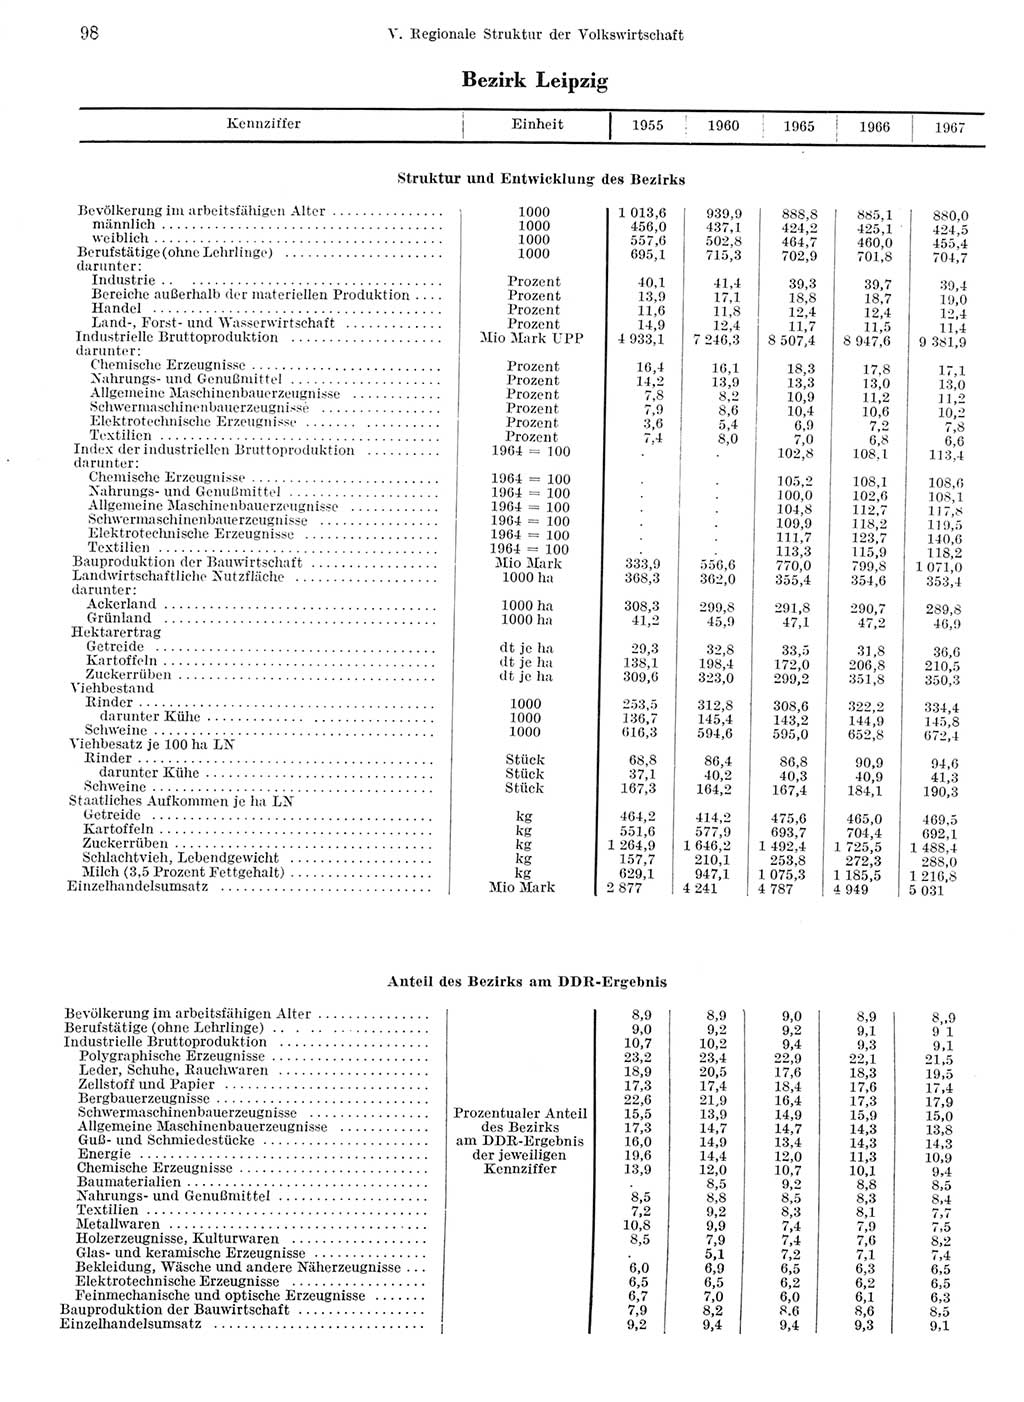 Statistisches Jahrbuch der Deutschen Demokratischen Republik (DDR) 1968, Seite 98 (Stat. Jb. DDR 1968, S. 98)